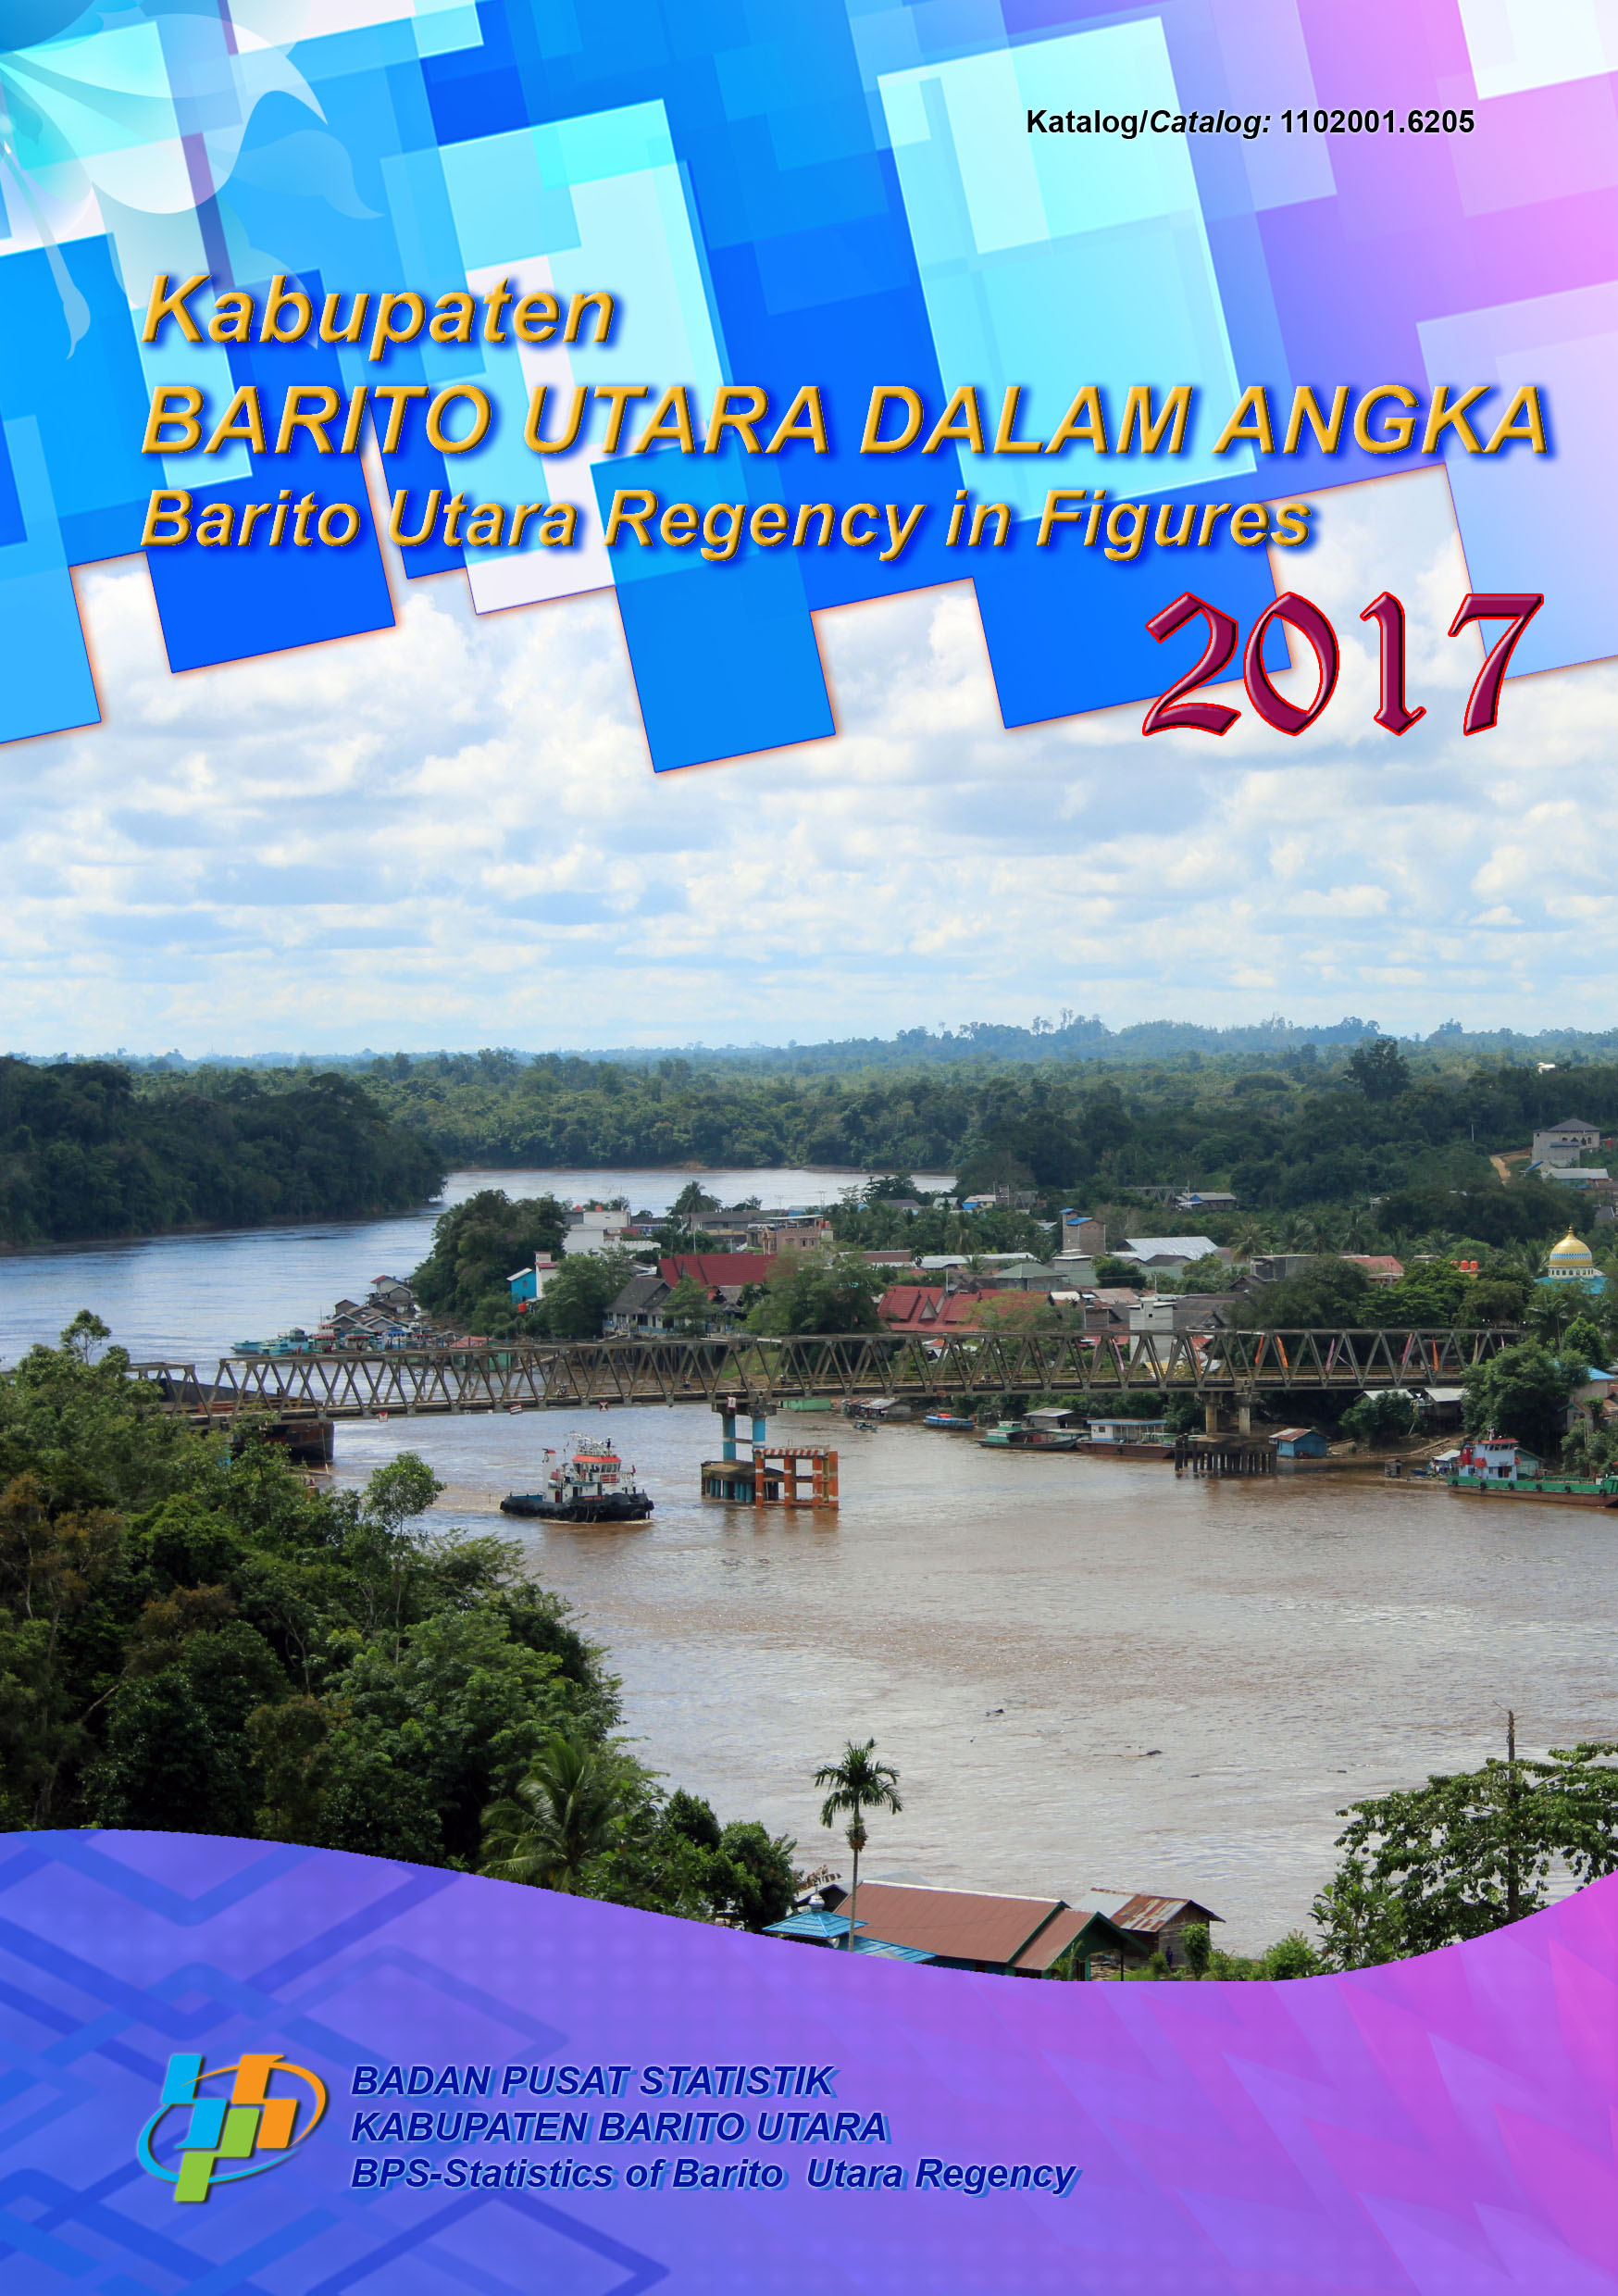 Kabupaten Barito Utara Dalam Angka 2017